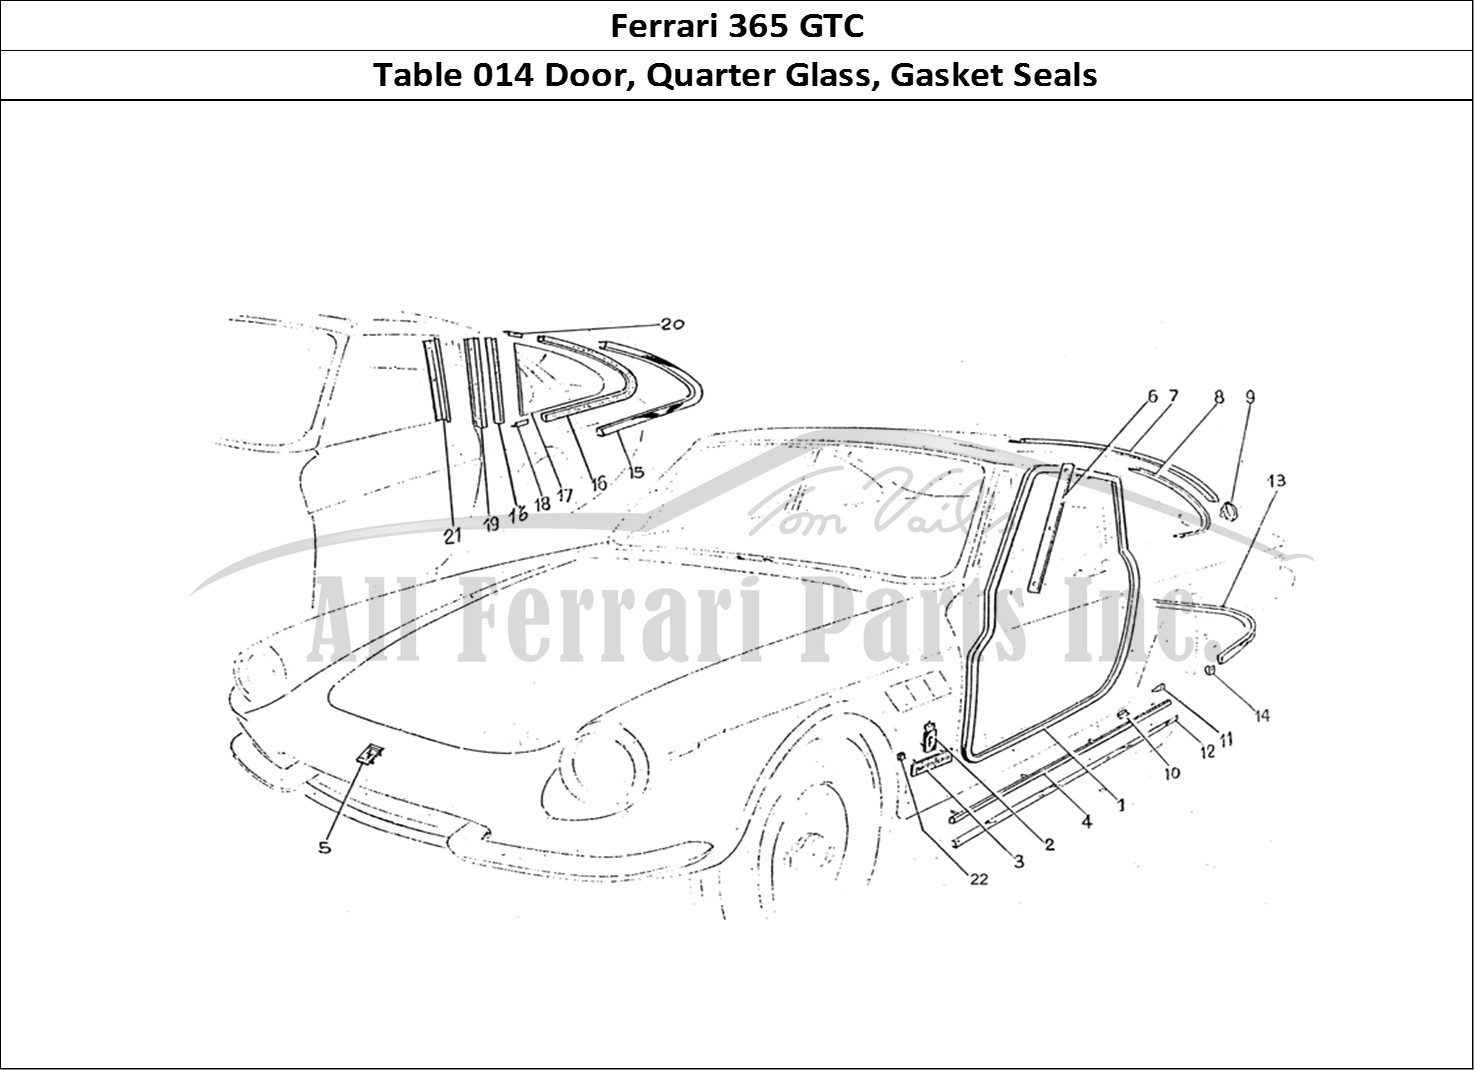 Ferrari Parts Ferrari 330 GTC (Coachwork) Page 014 Gasket seals door & quart